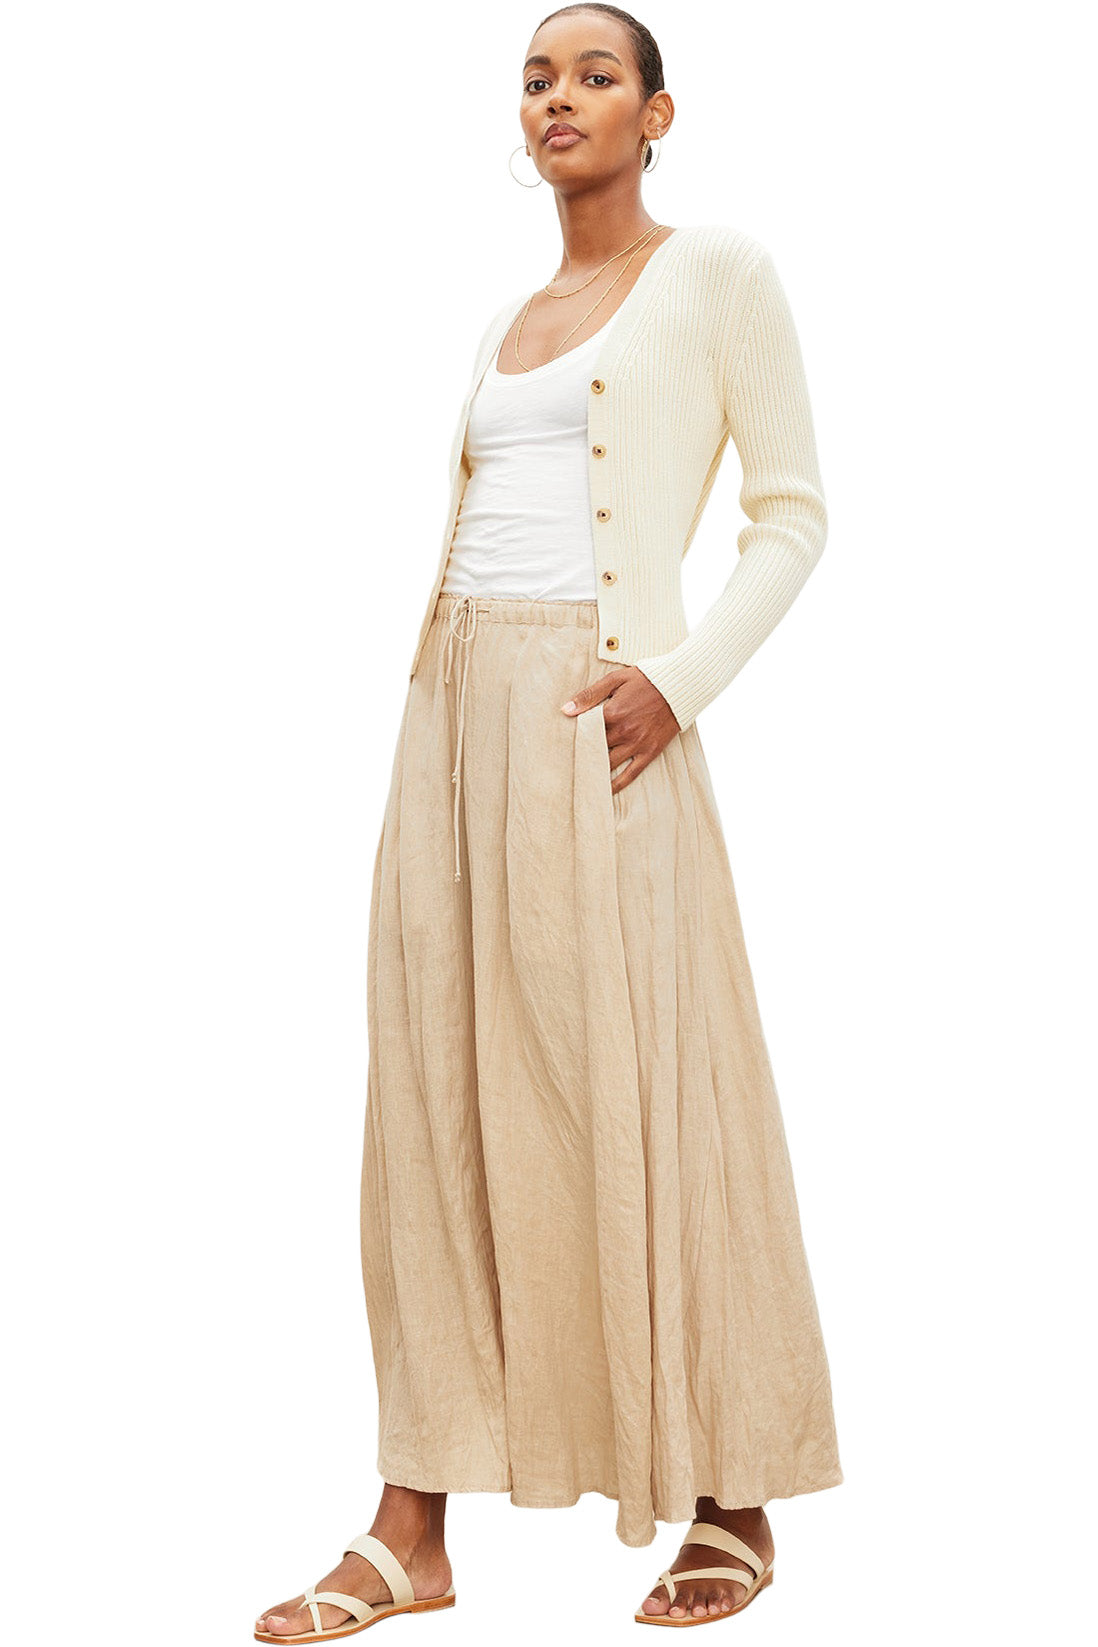 Velvet Bailey Woven Linen Skirt in Biscuit